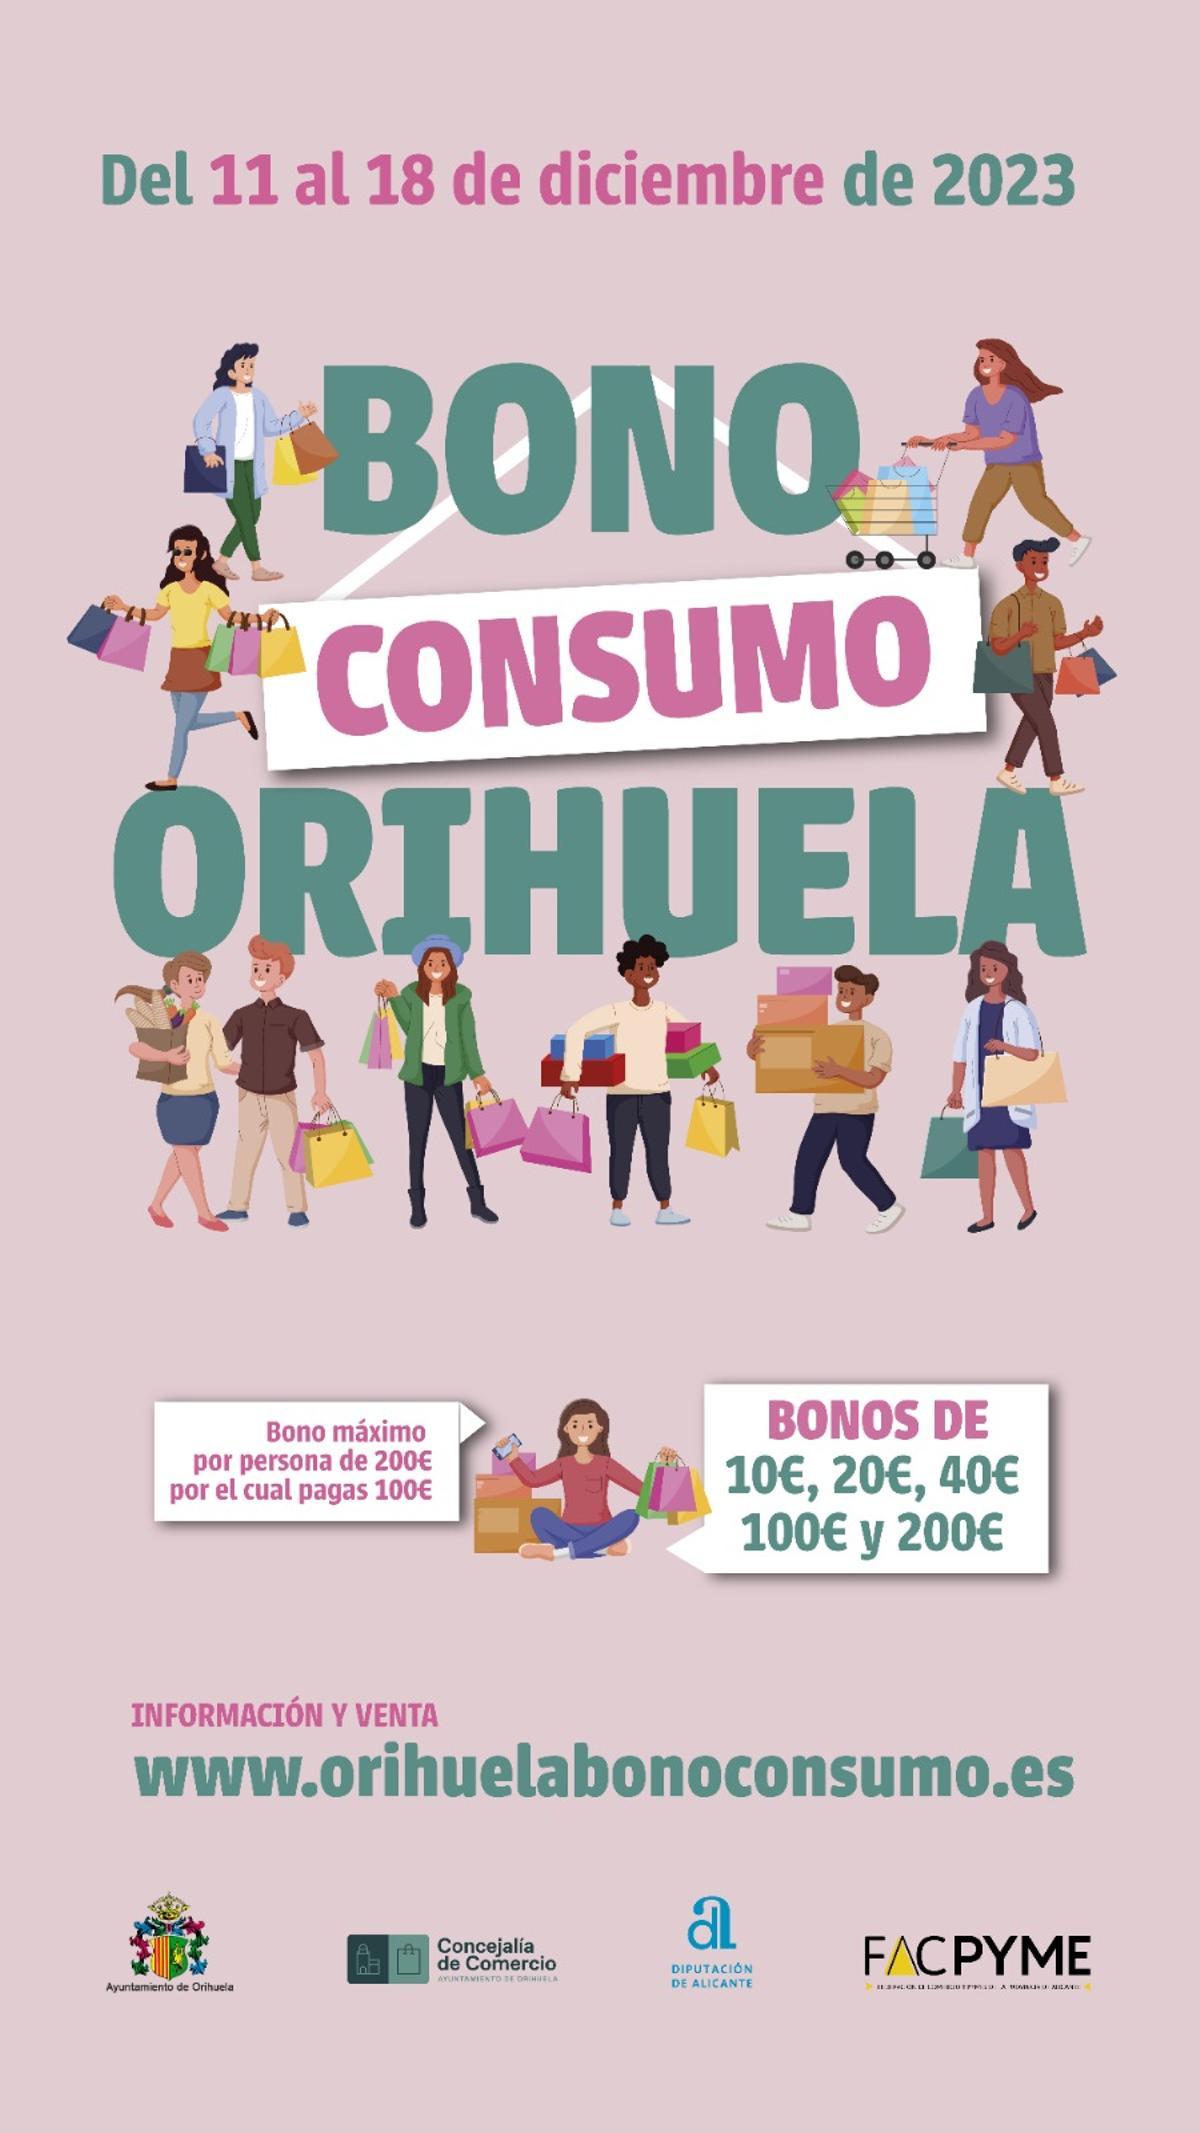 Cartel de la campaña de diciembre del bono consumo en Orihuela.